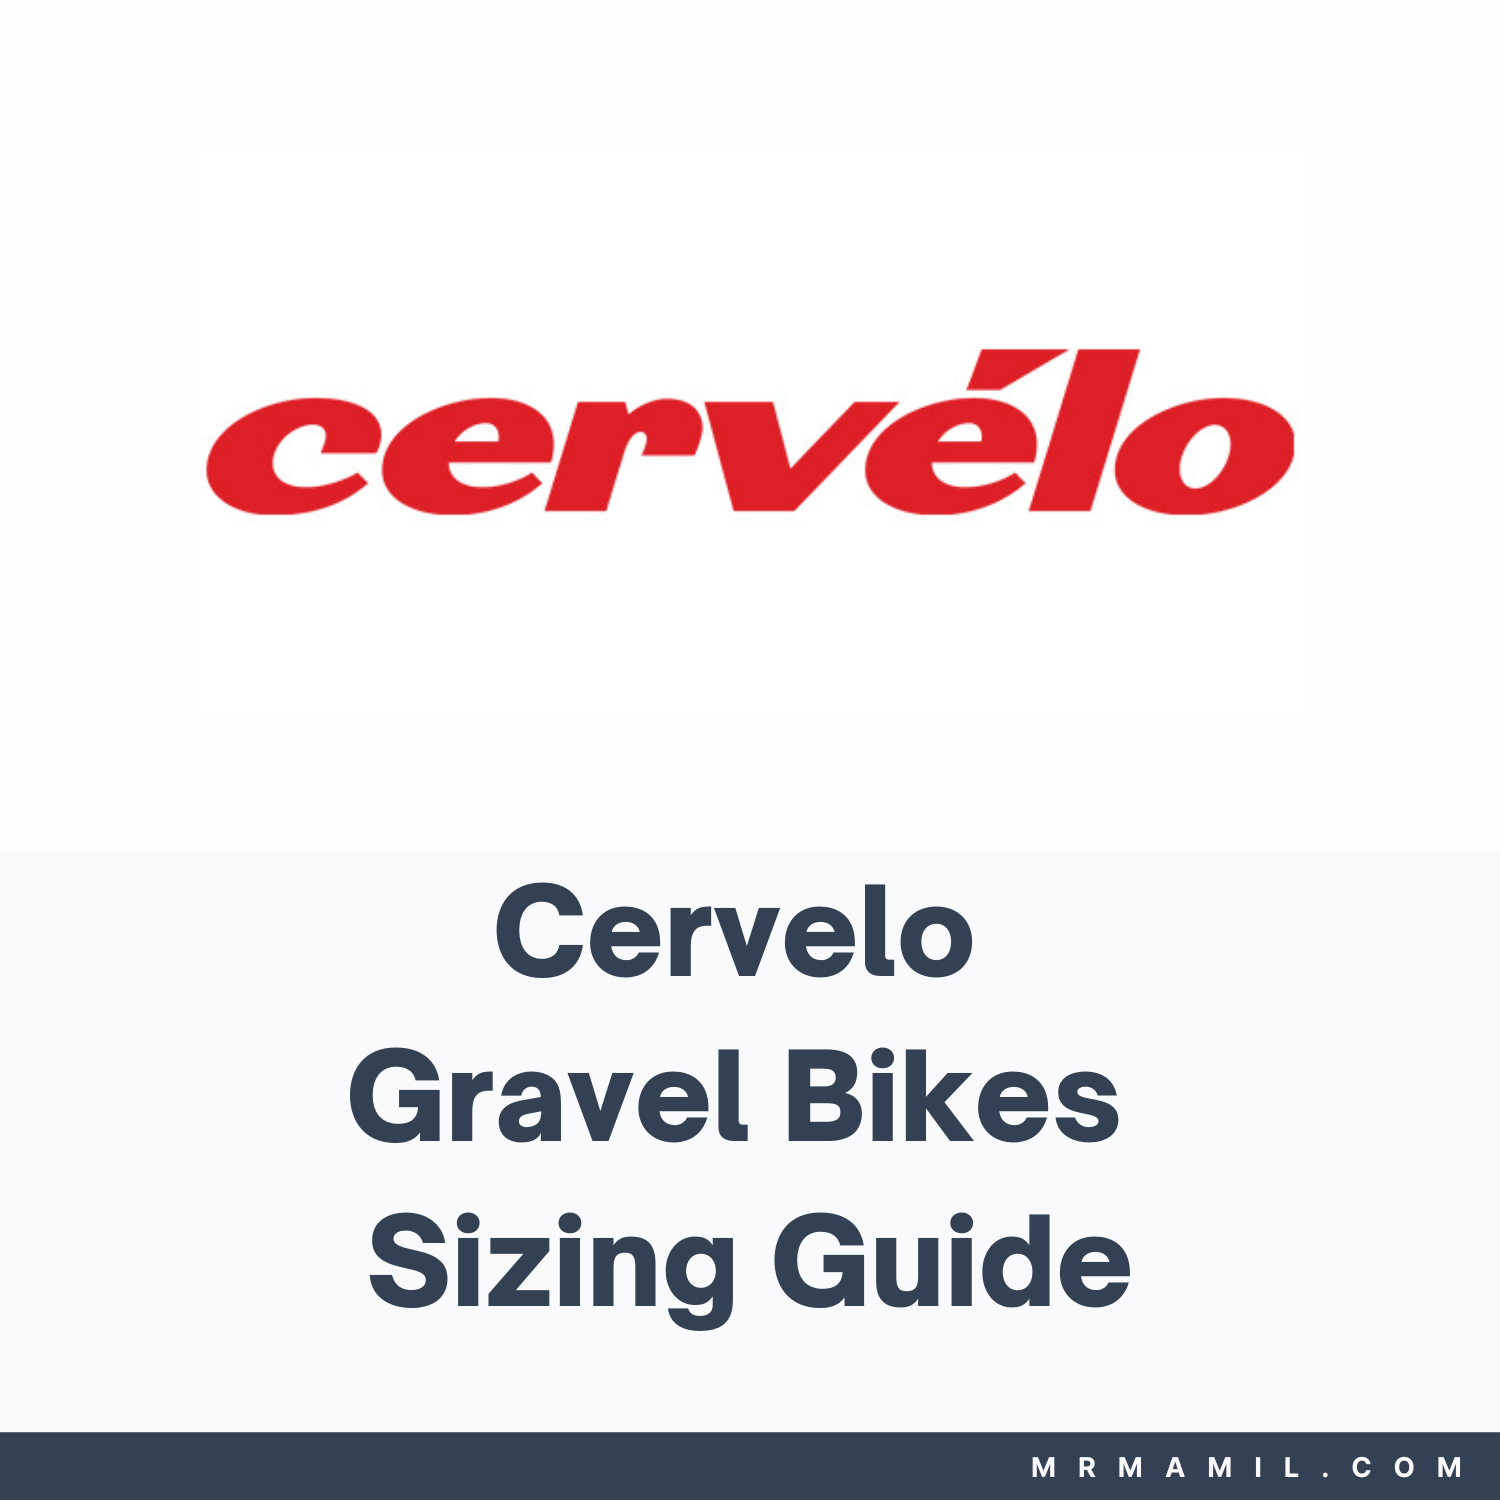 Cervelo Gravel Bikes Sizing Guide